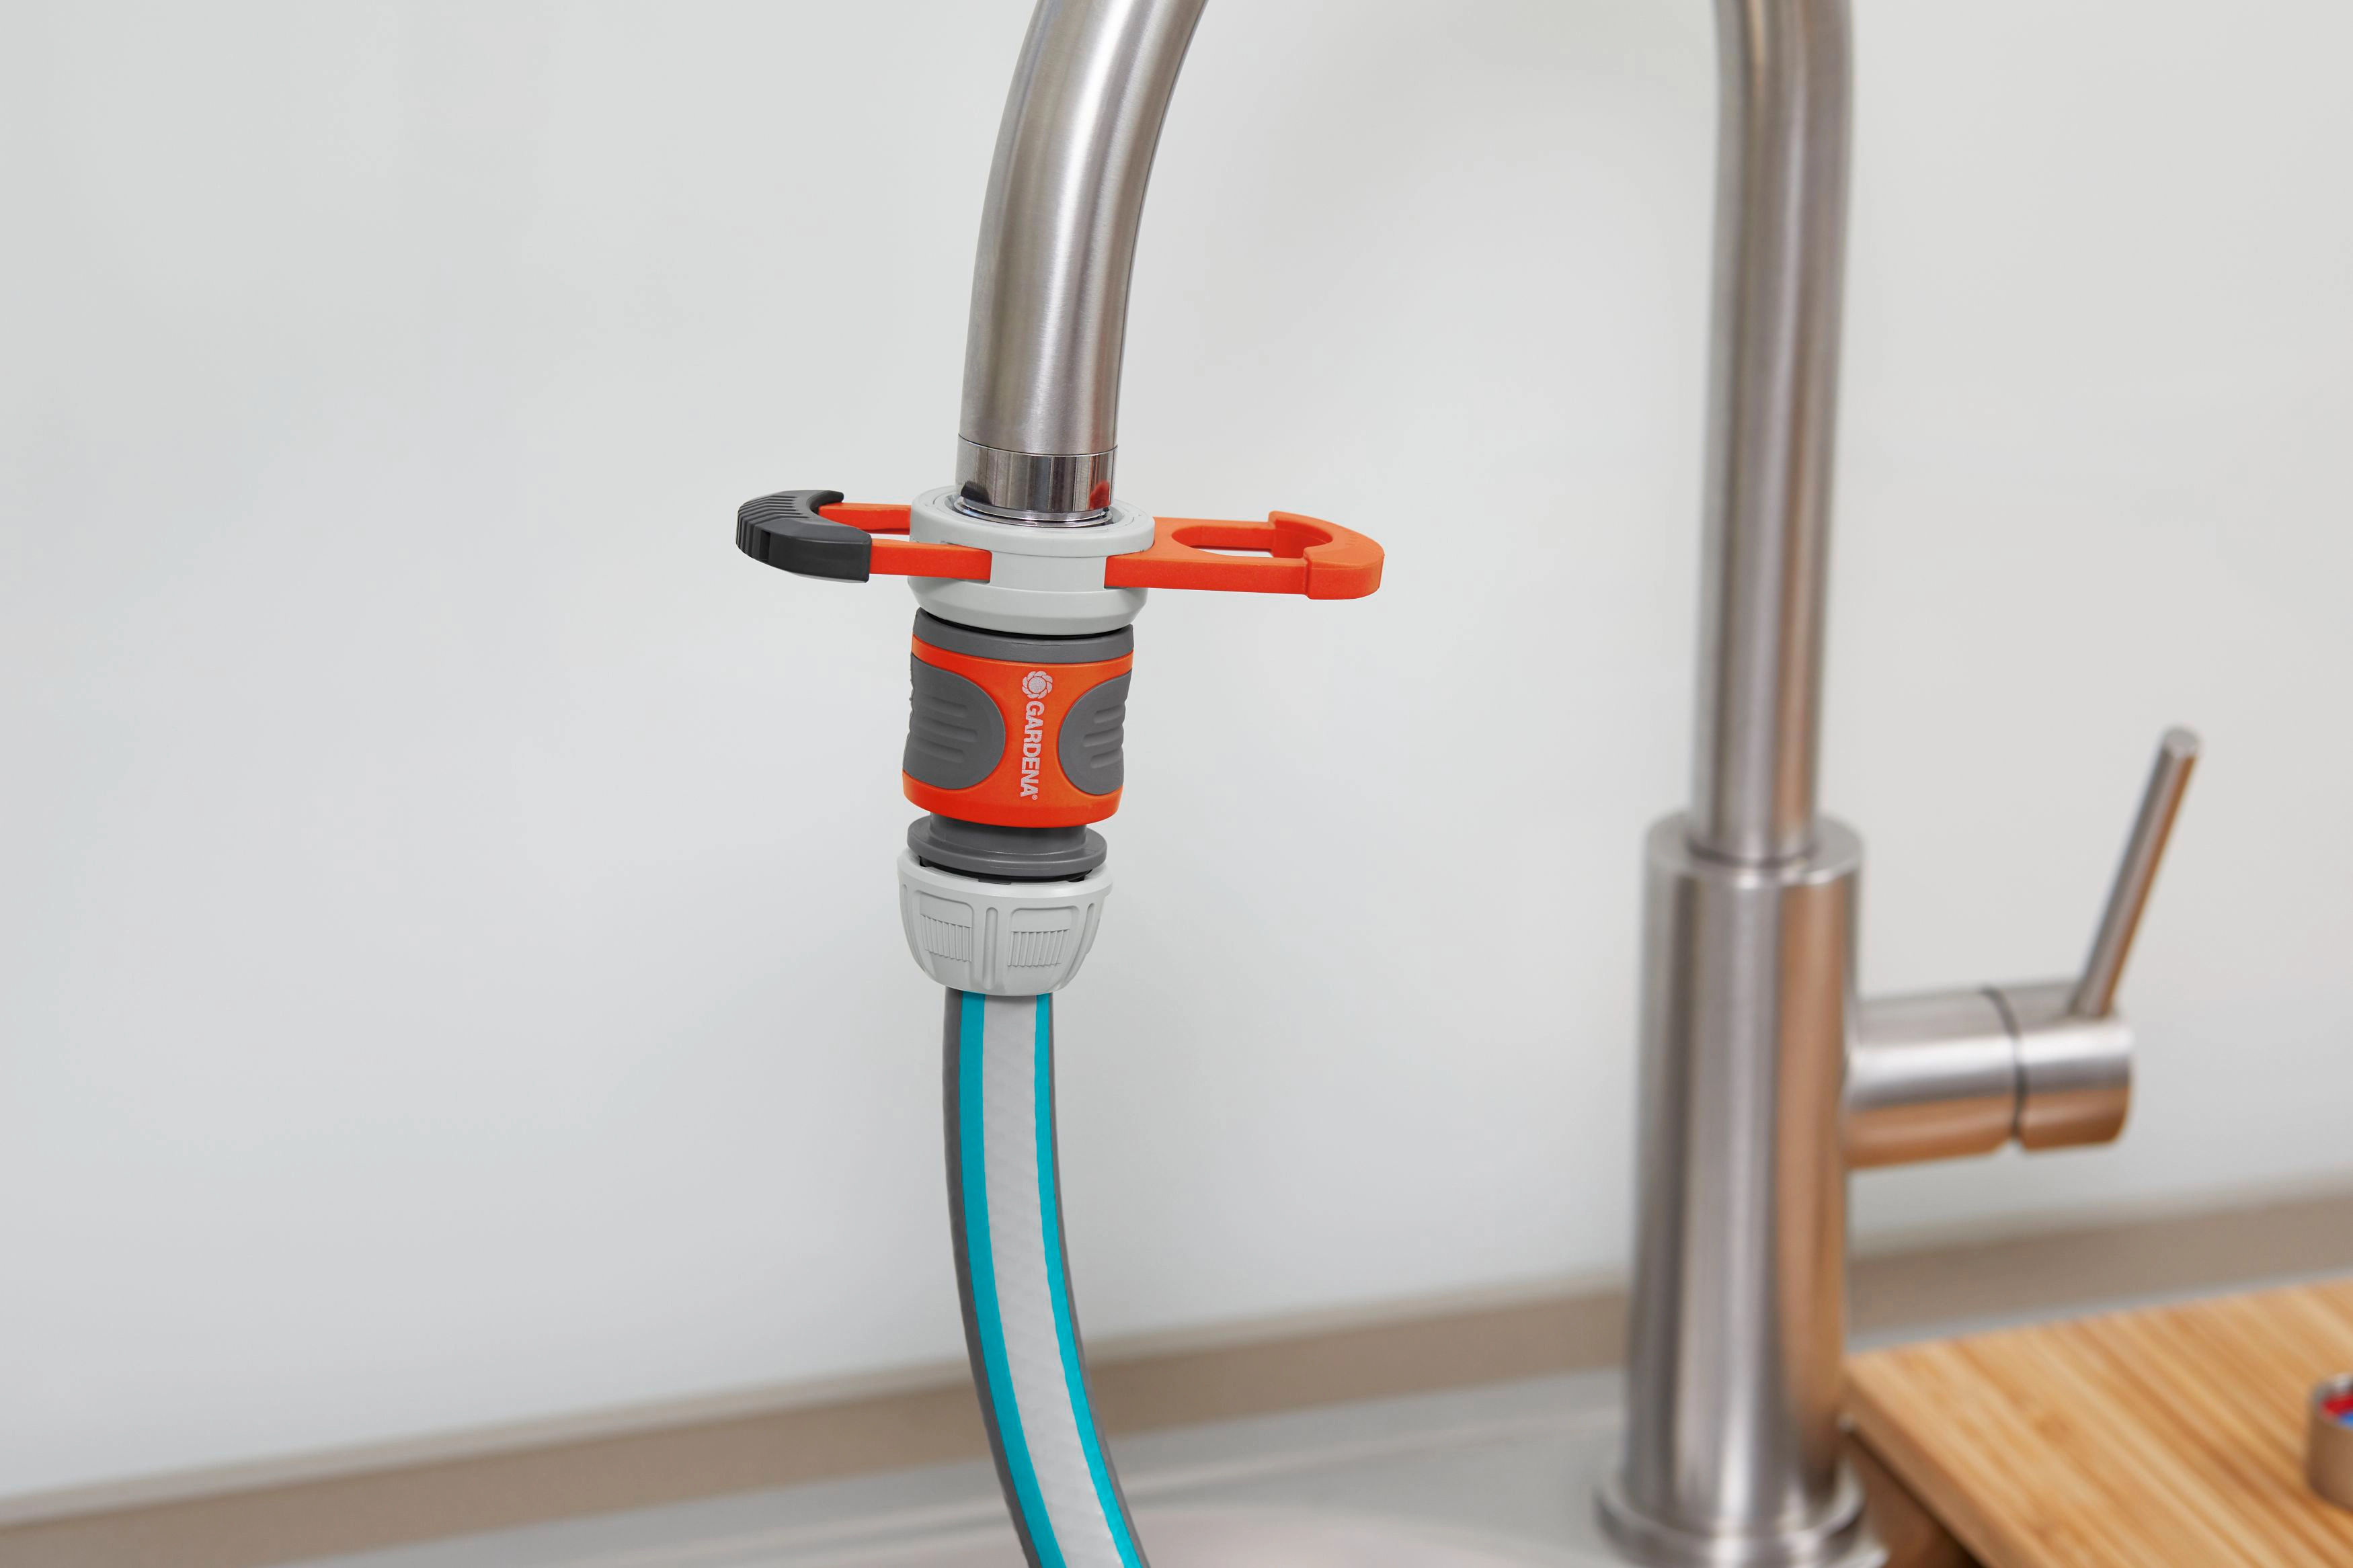 Gardena Wasserdieb: Universal Wasserhahn-Adapter zum Anschluss des